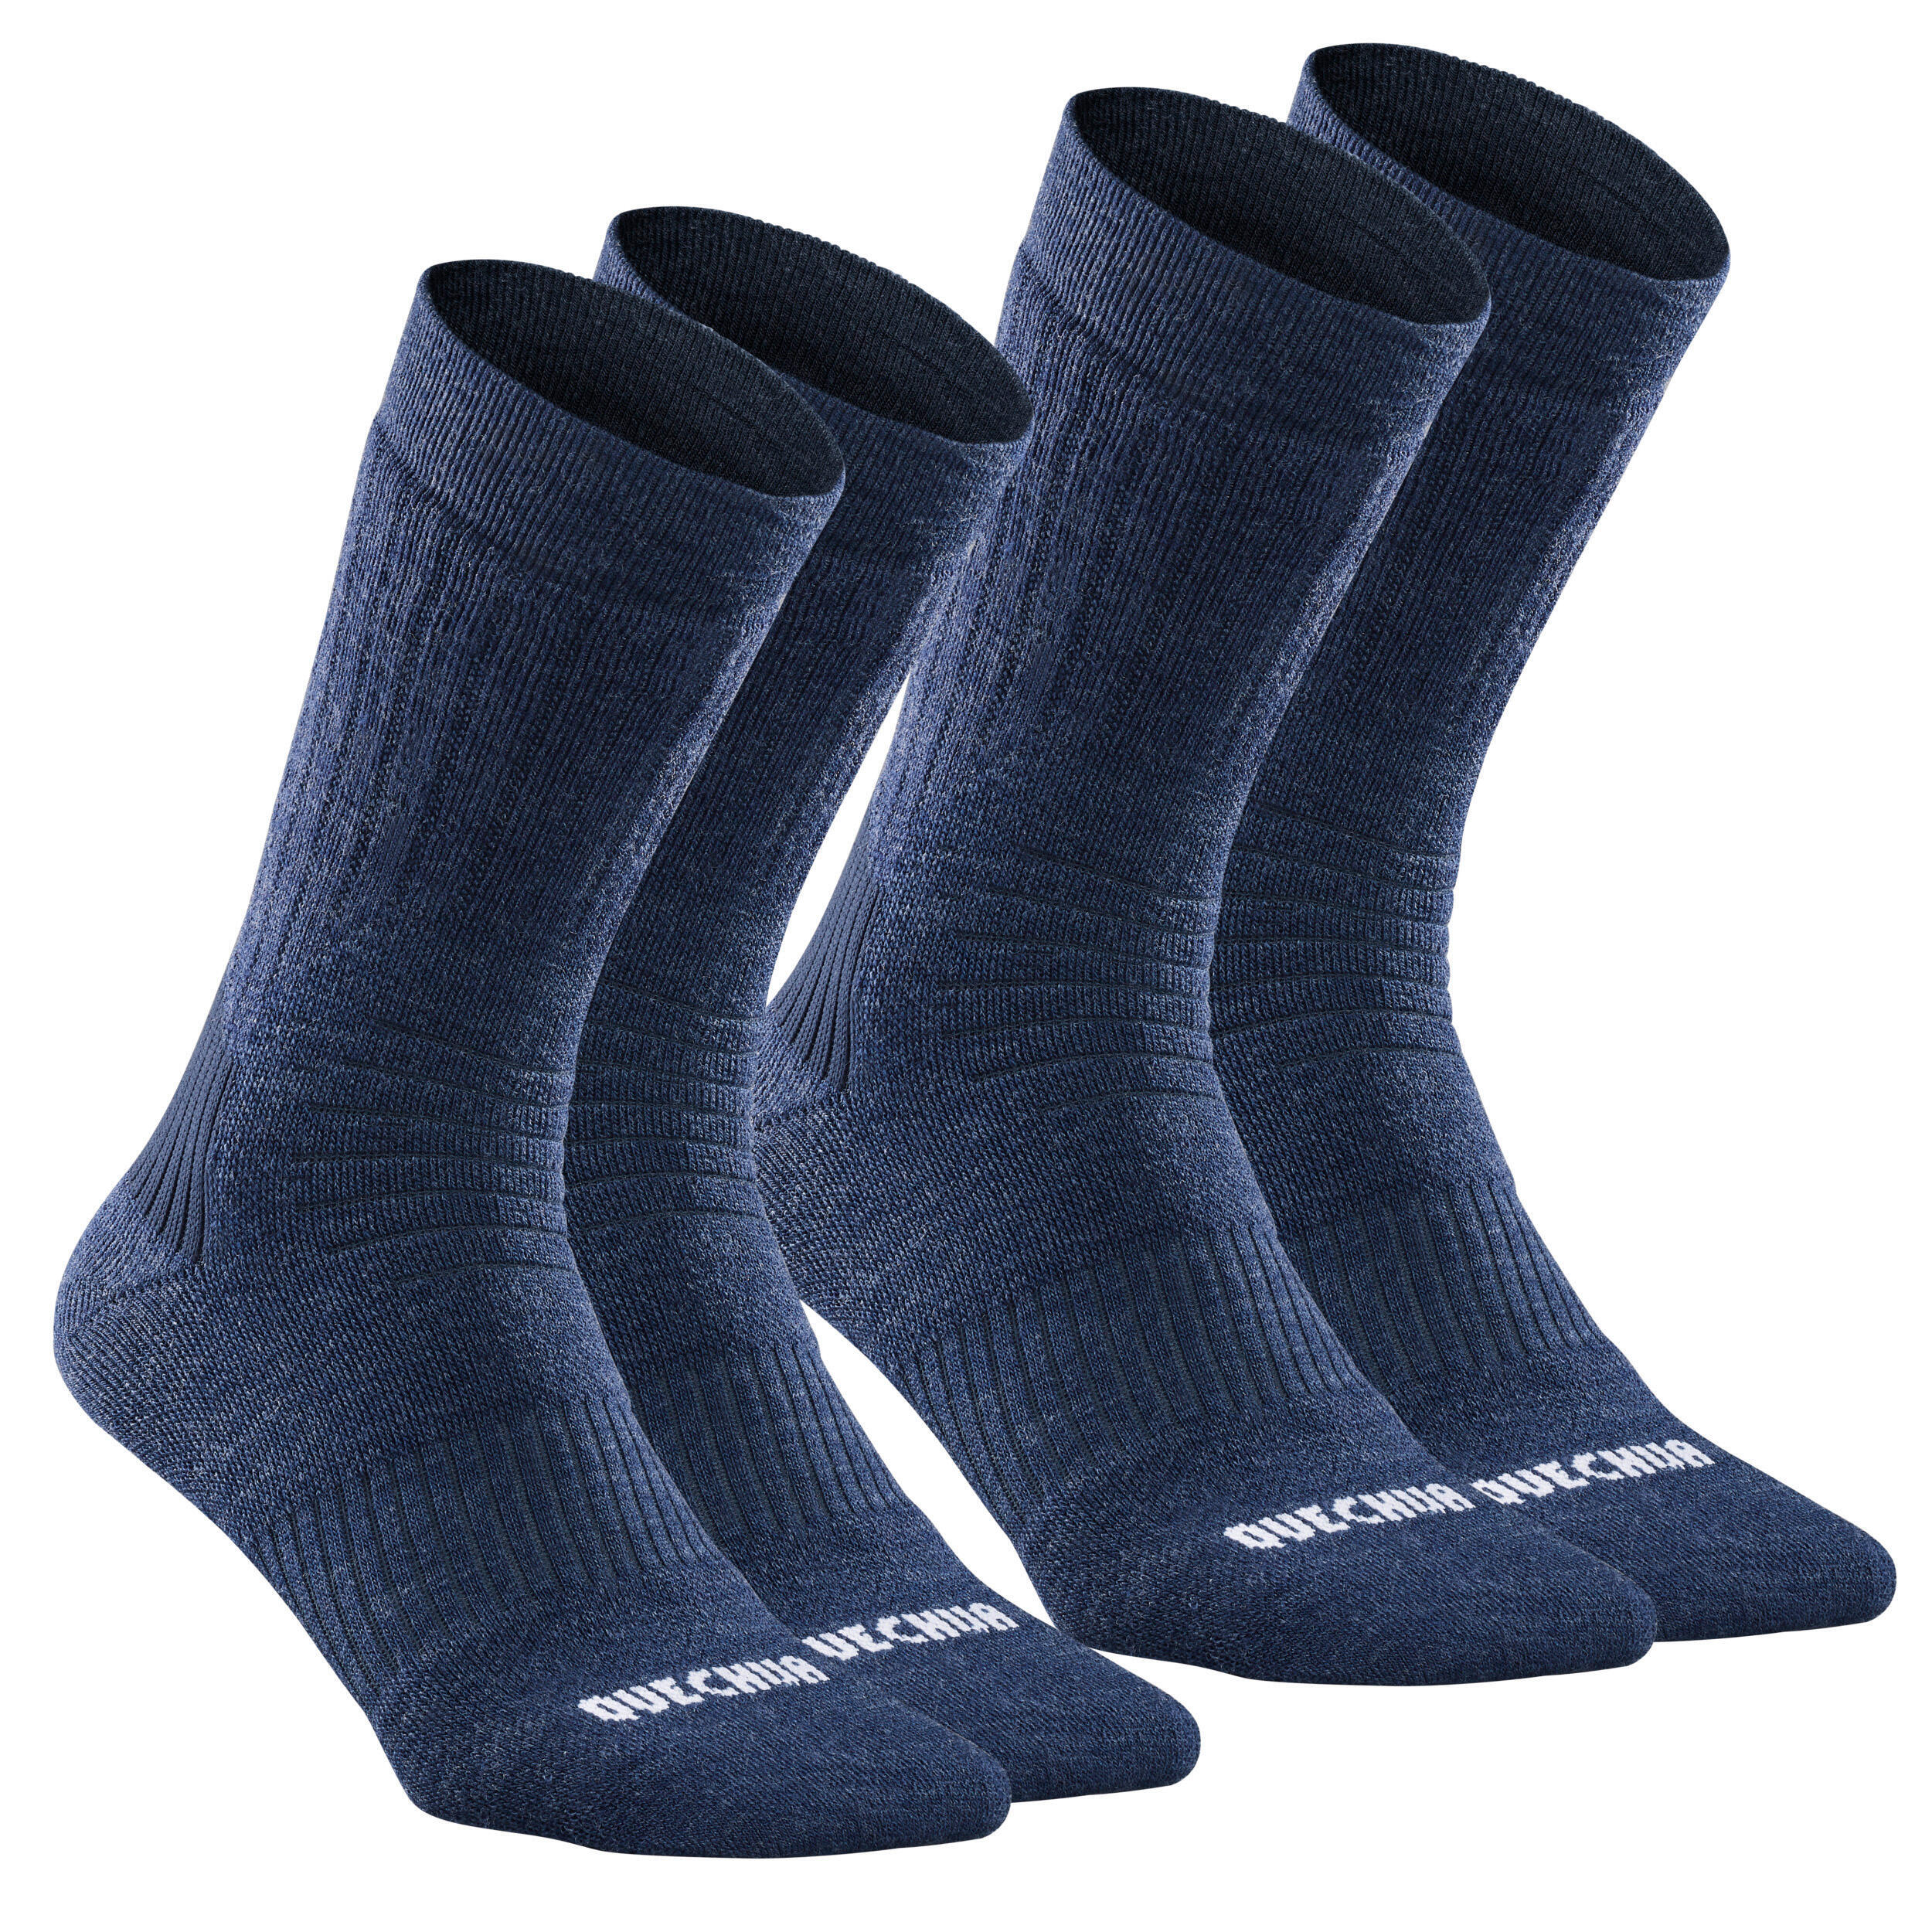 Комплект носков теплые походные Quechua Mid SH100 X-Warm, 2 пары, темно-синий походные носки теплые высокие 2 пары зимние походные sh100 quechua цвет schwarz